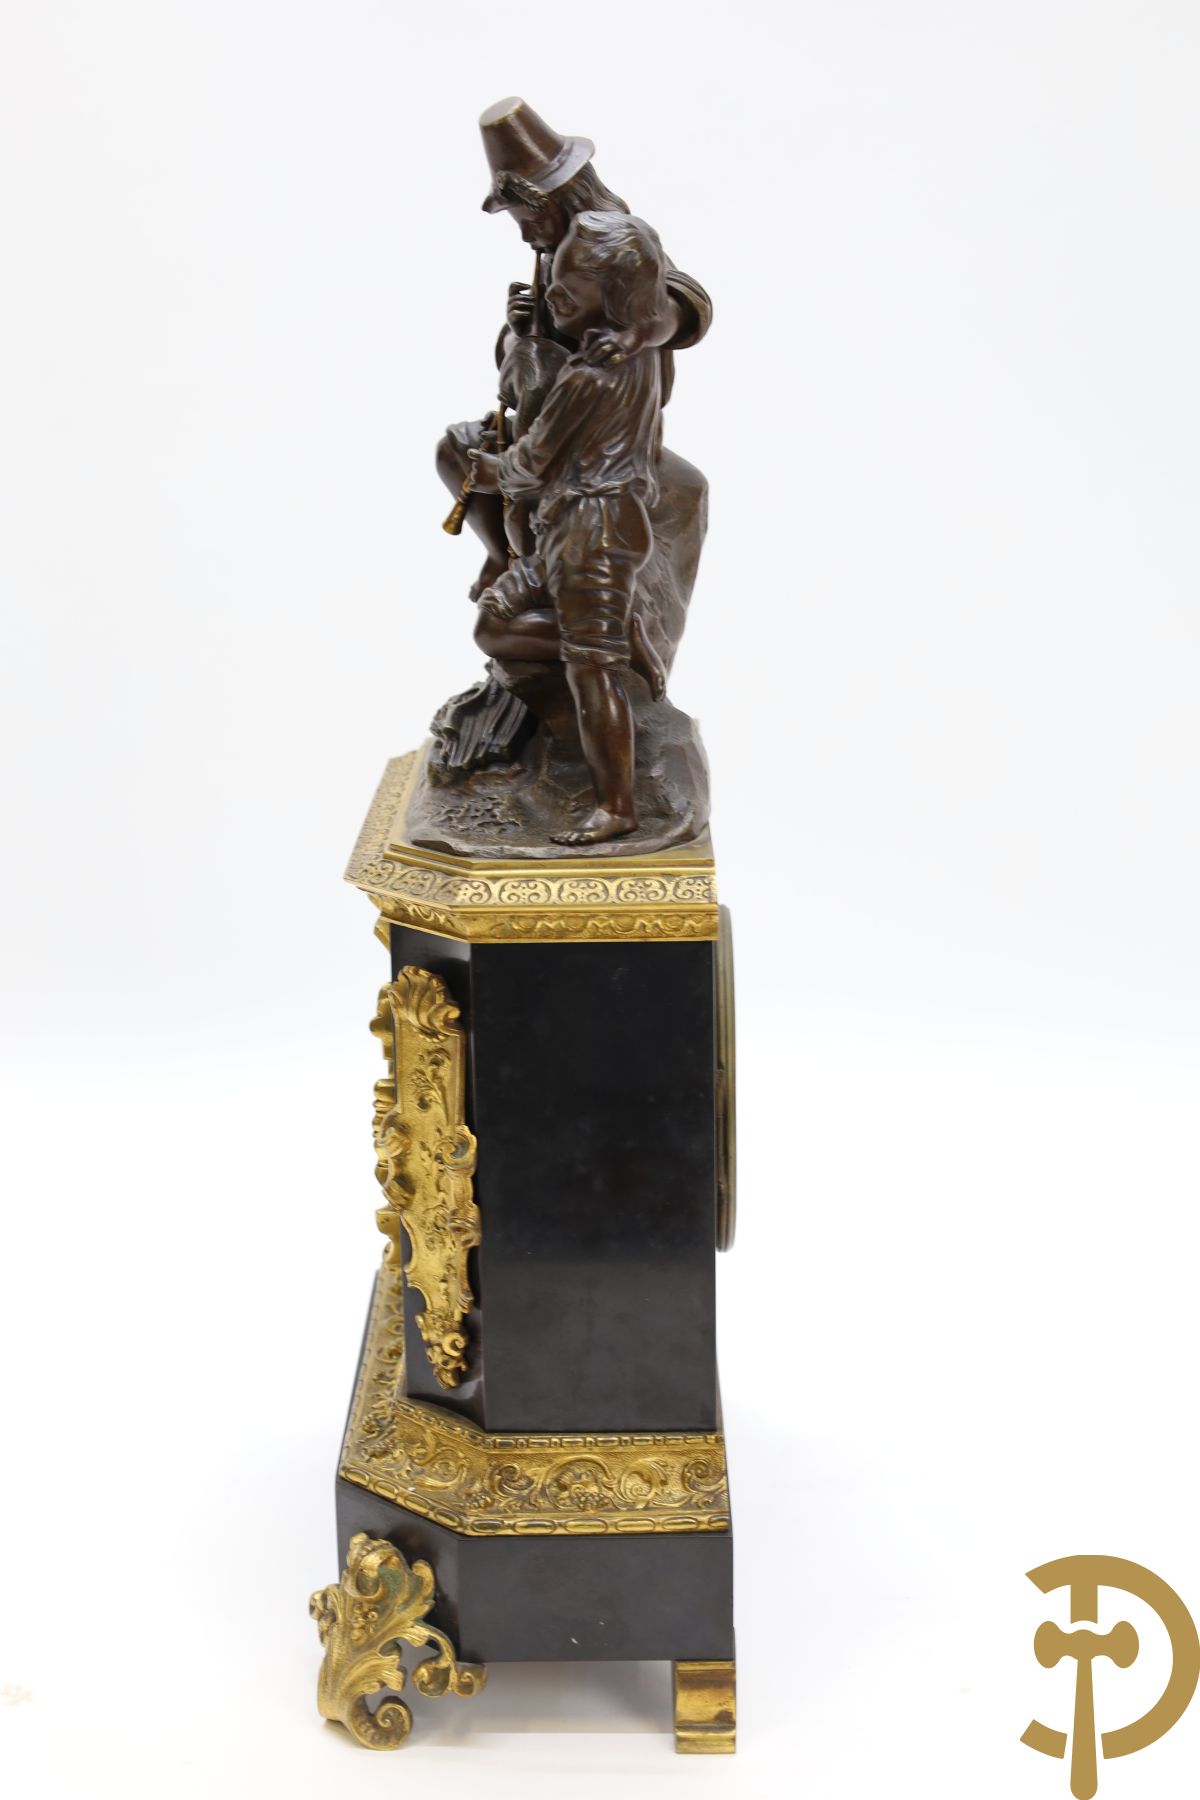 Zwart marmeren Napoleon III pendule bekroond met doedelzakspelers, Cotiny F. de bronzes à Bruxelles getekend